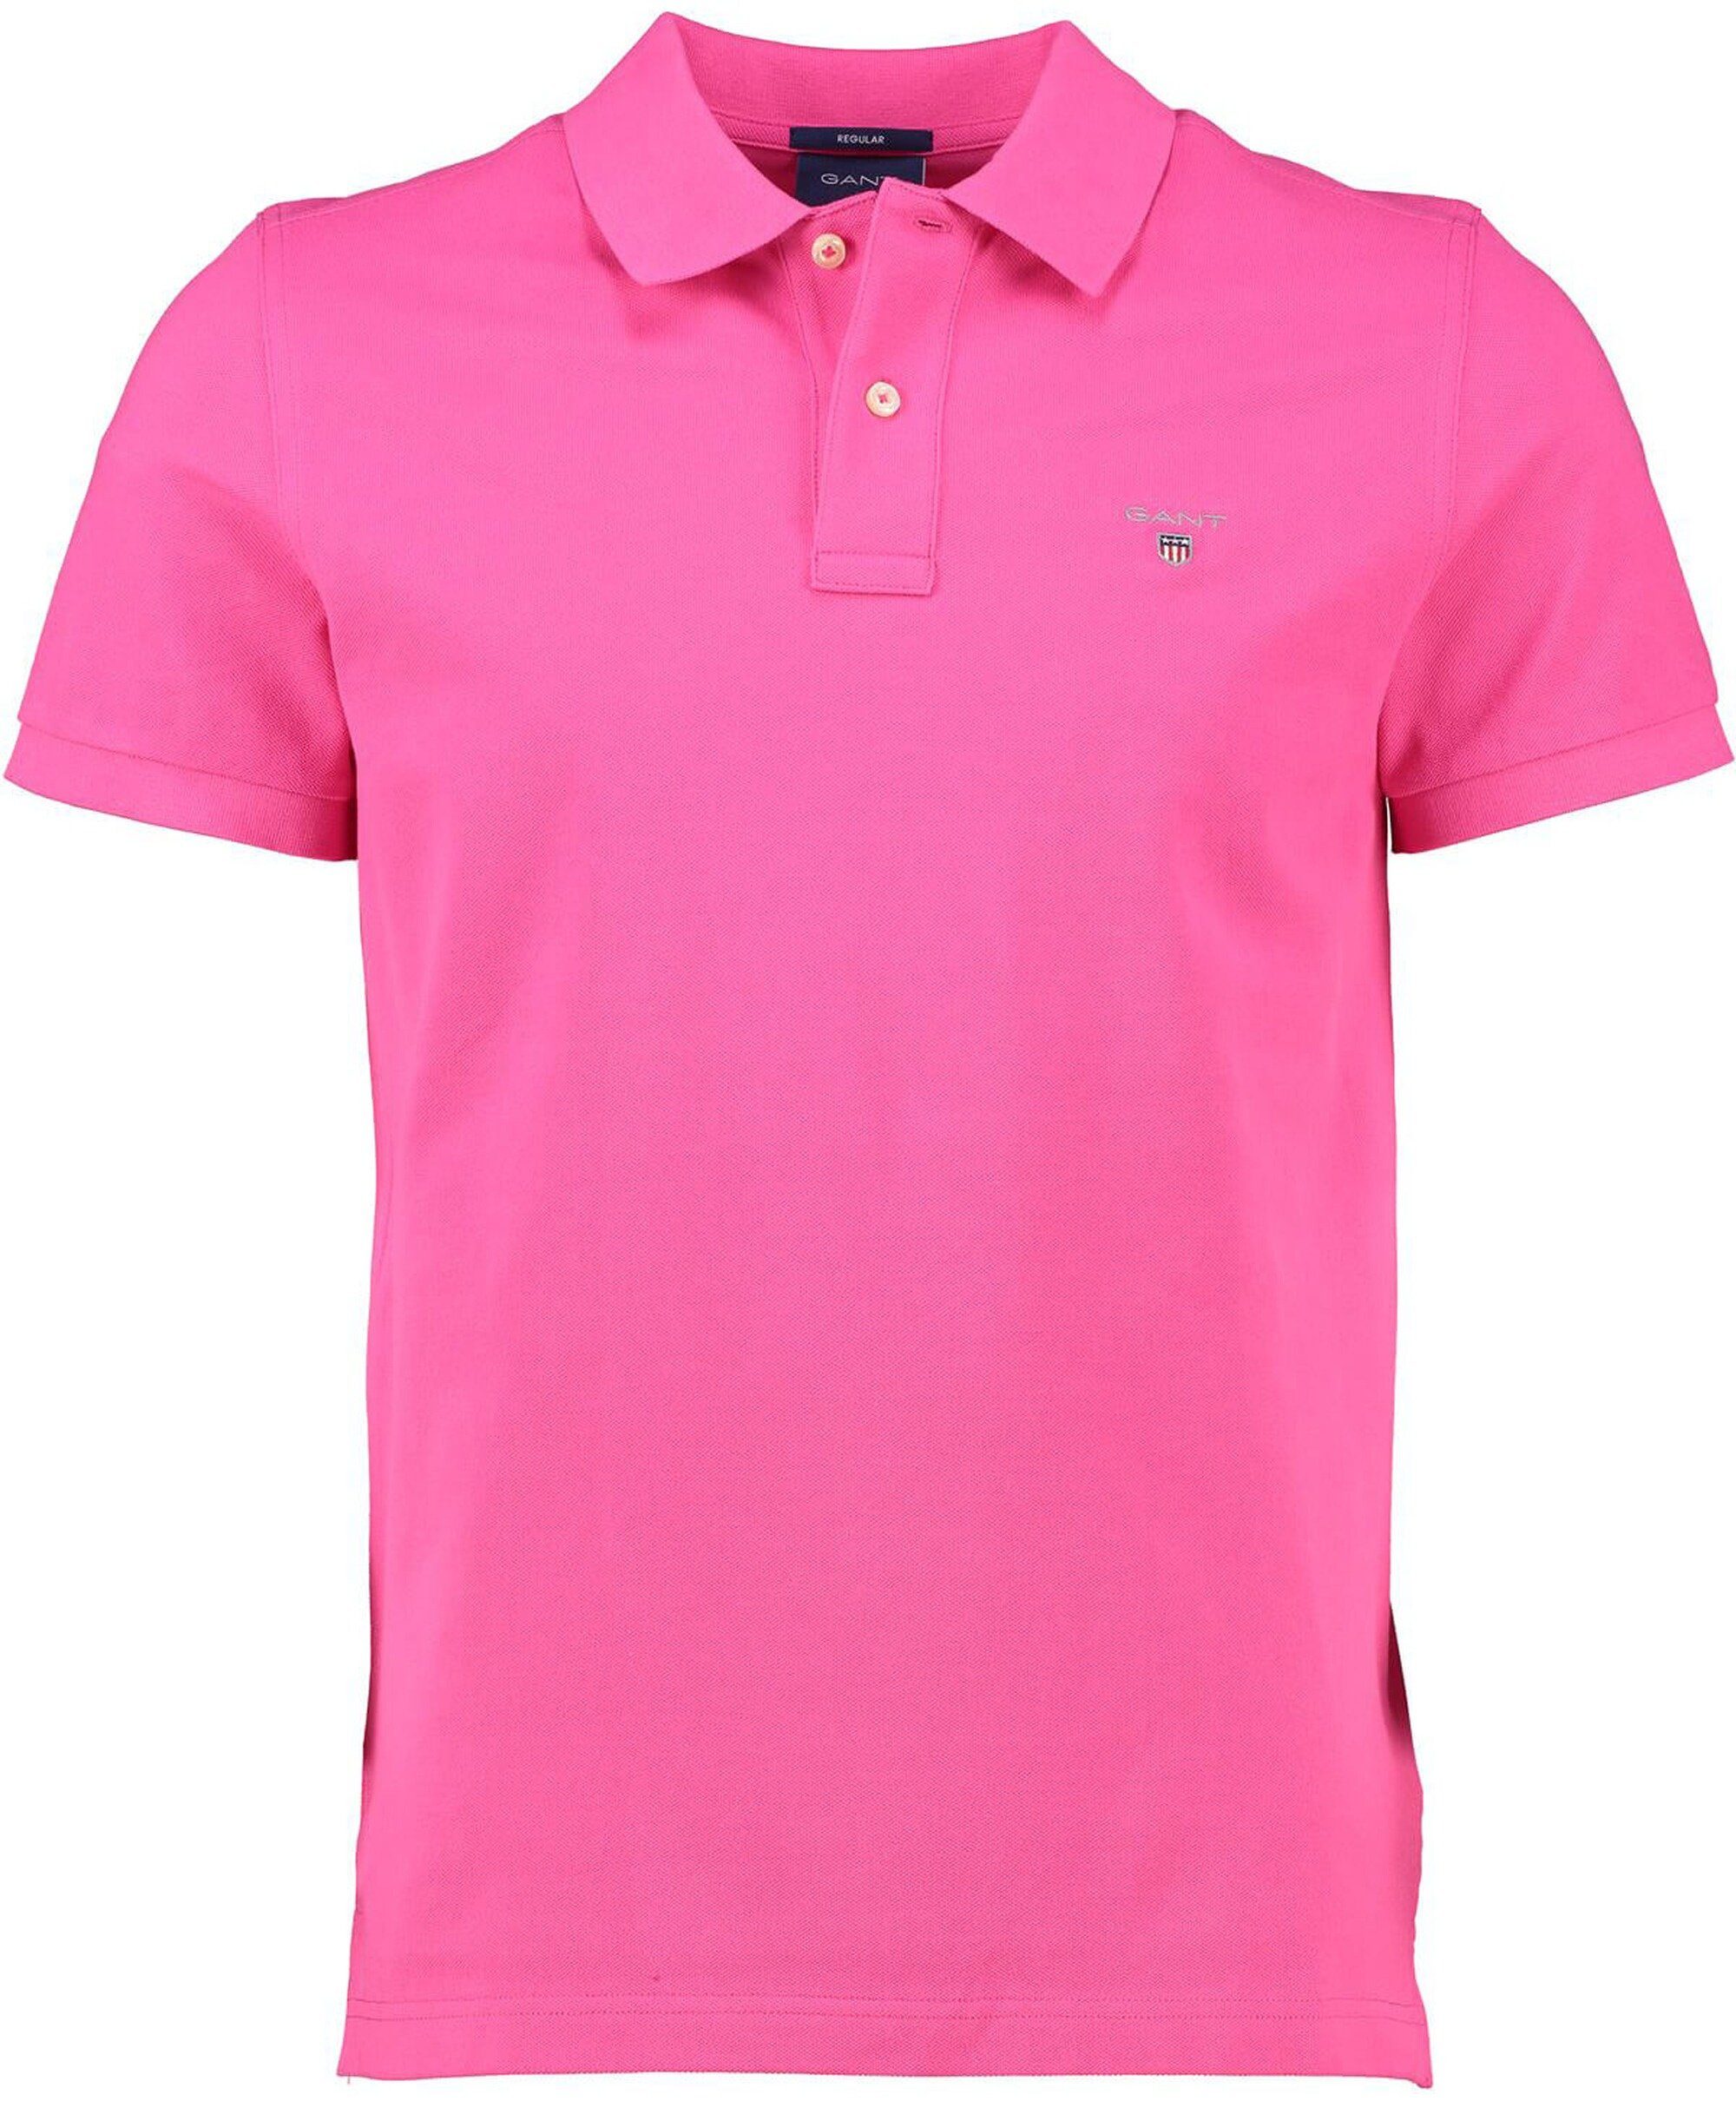 Gant Poloshirt GANT Polo-Shirt pink Original Rugger hyper pink